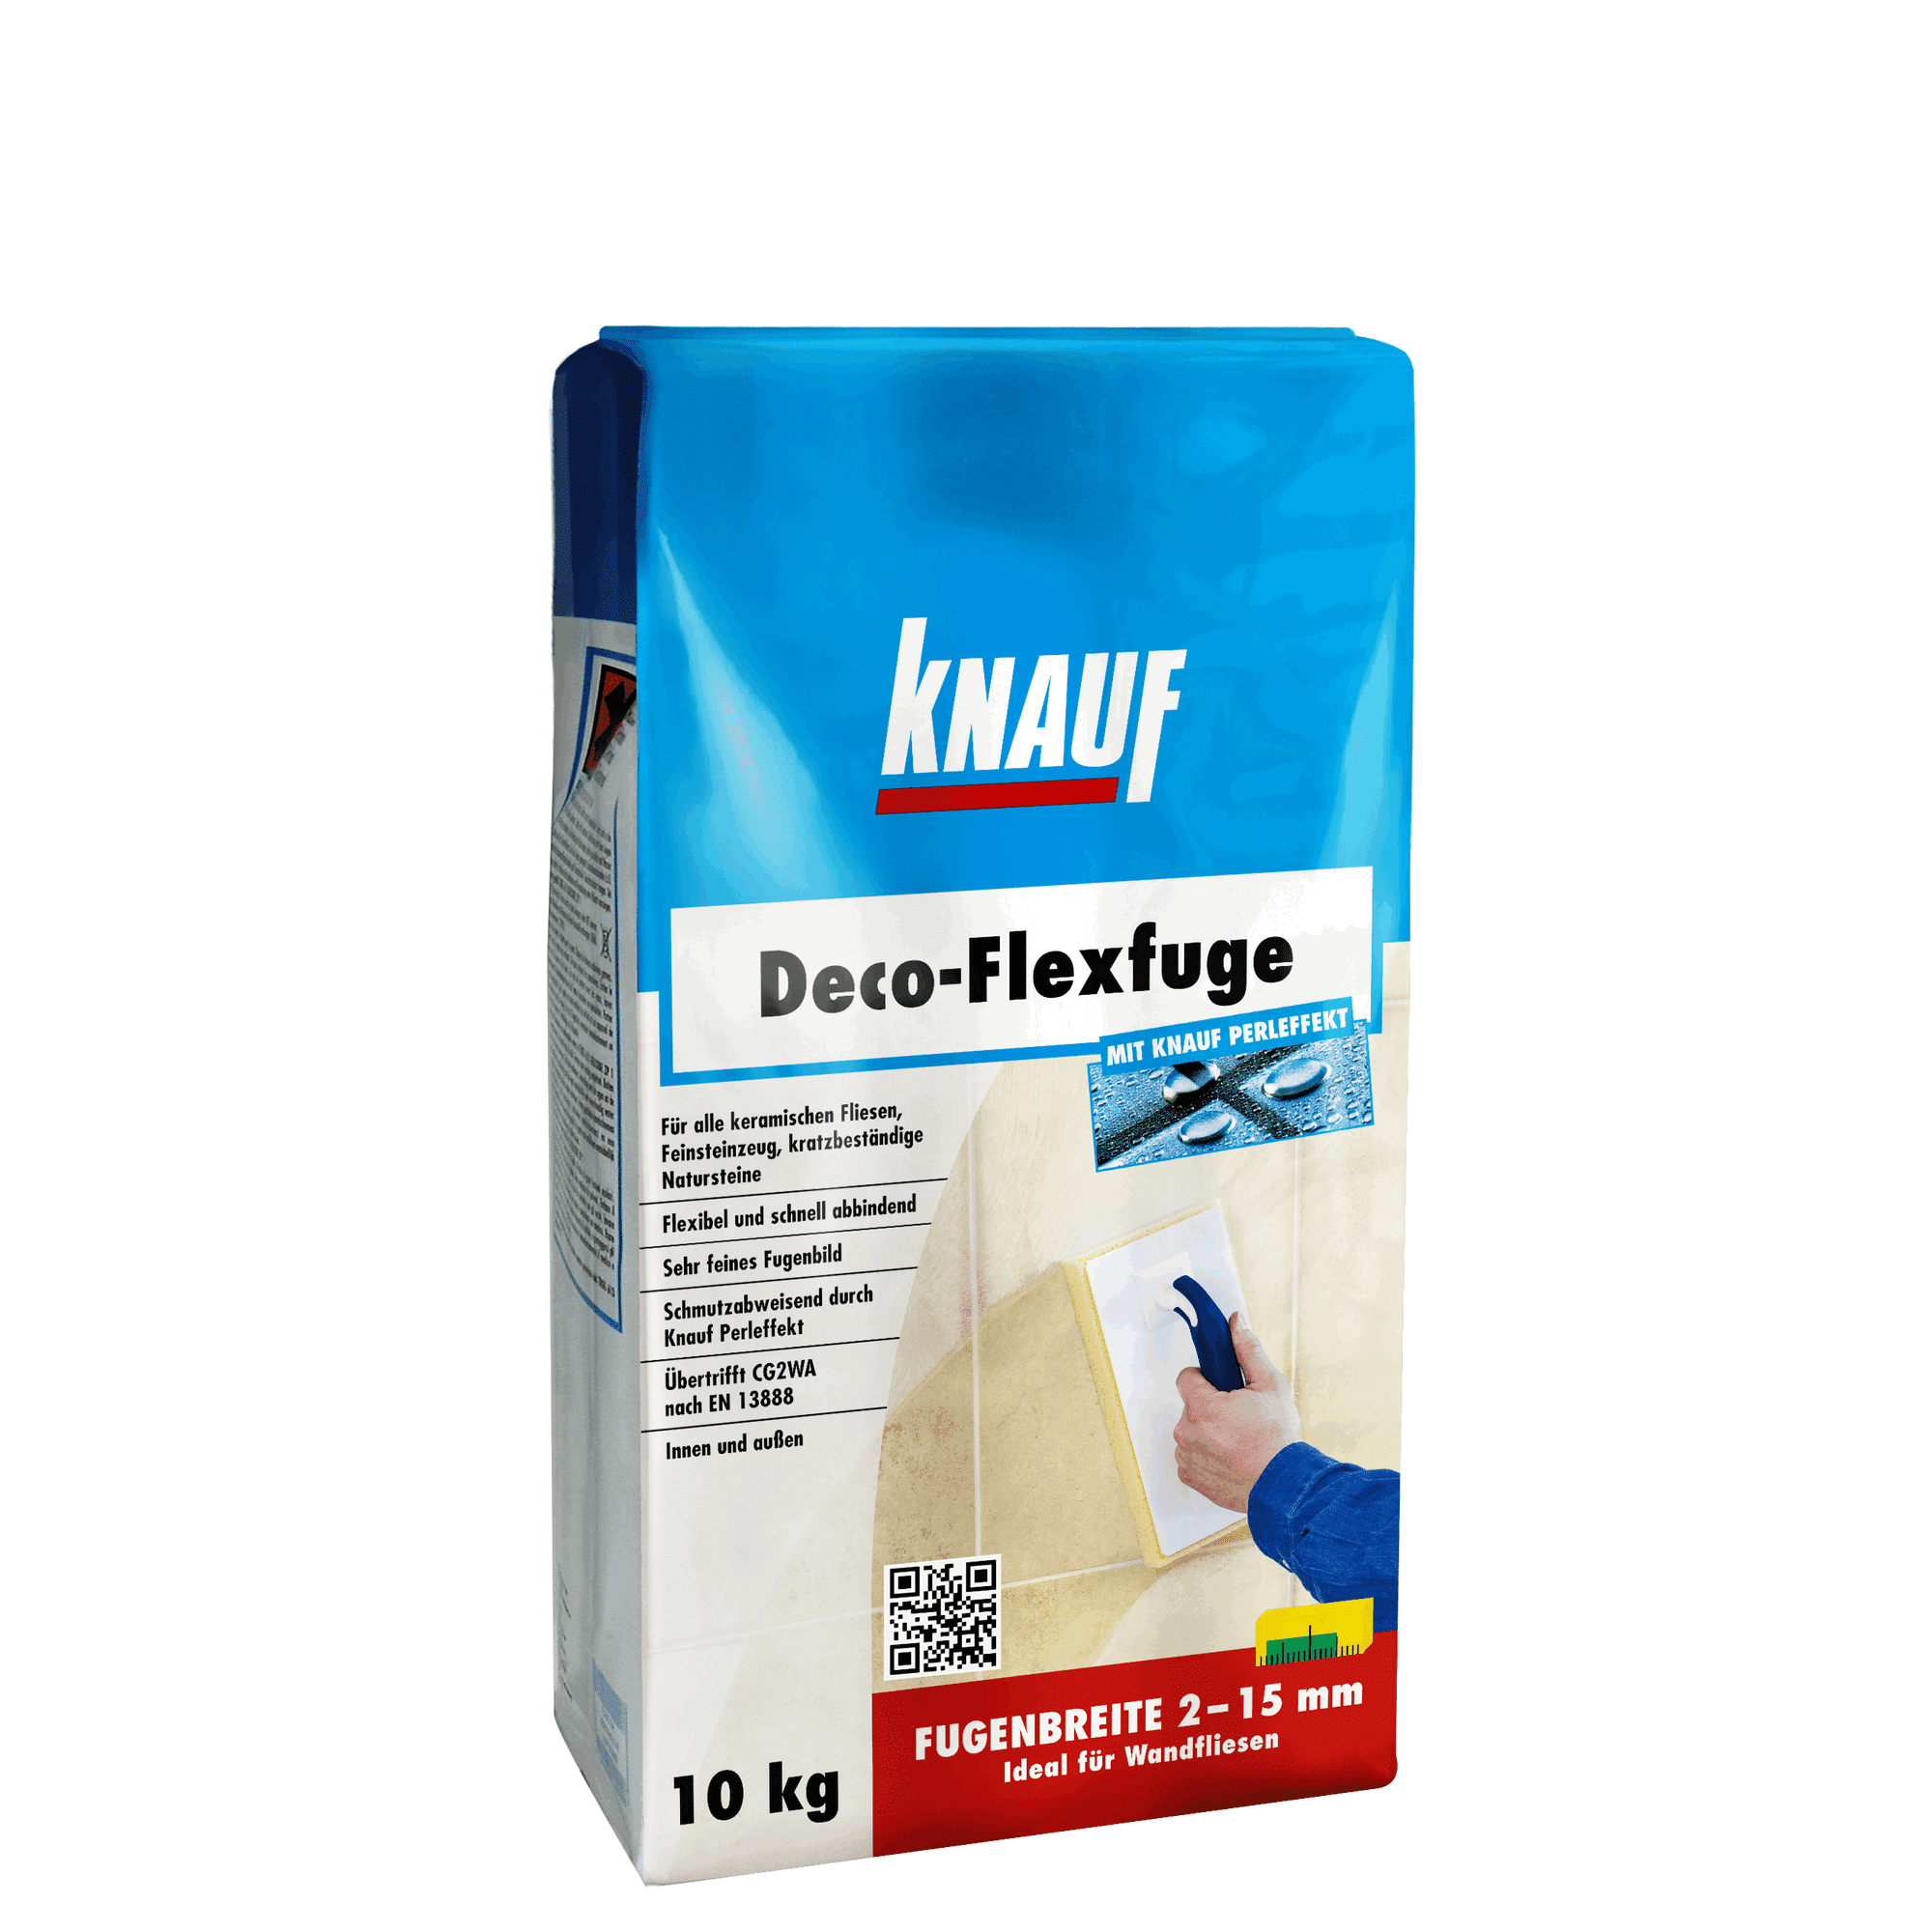 Fugenmörtel "Deco-Flexfuge" weiß 10 kg + product picture